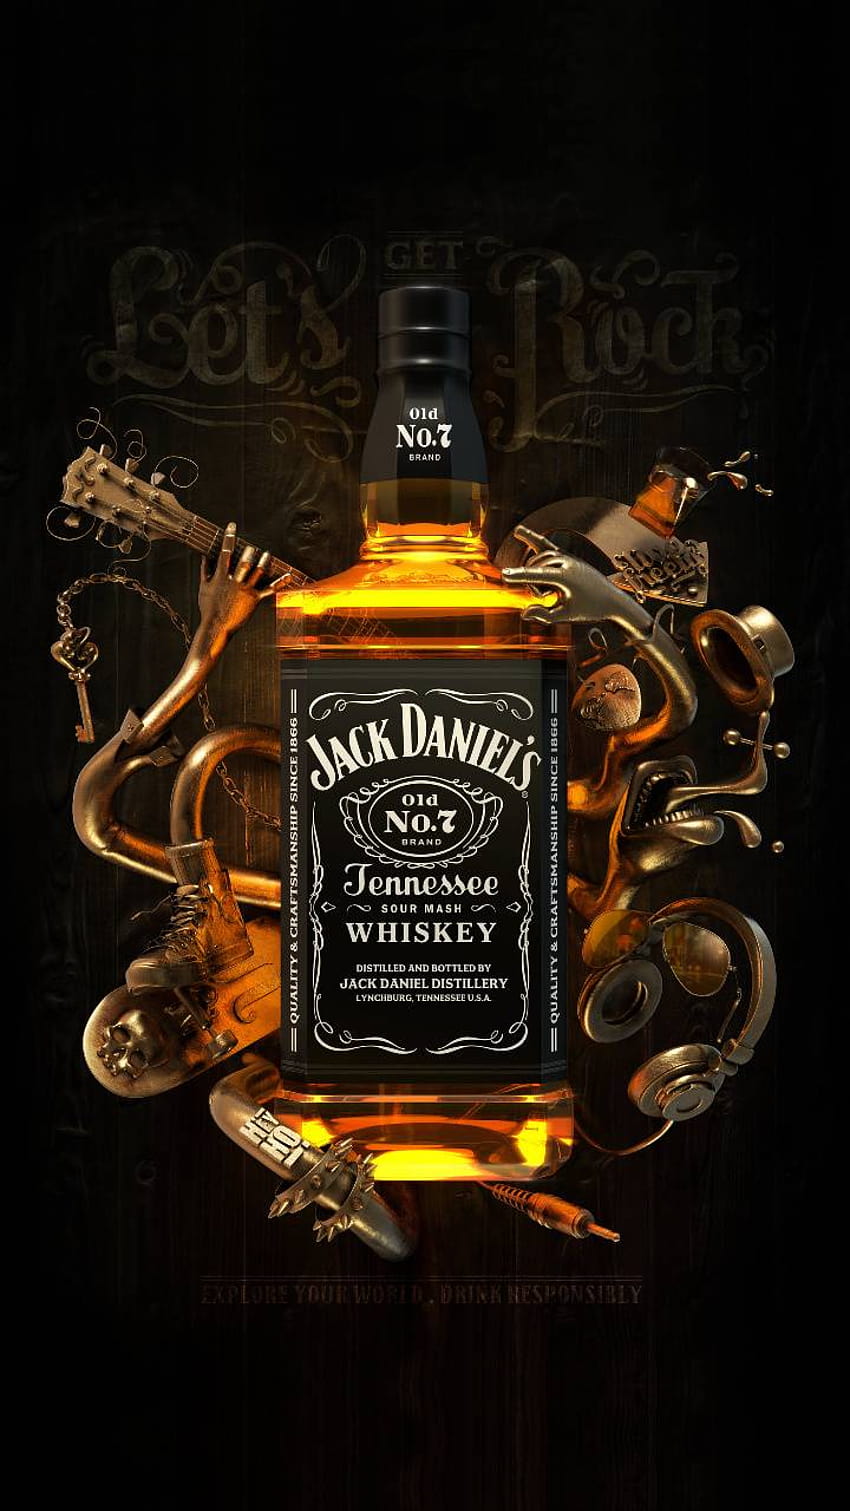 Arte de Jack Daniels por Snk77, jack daniels androide fondo de pantalla del teléfono